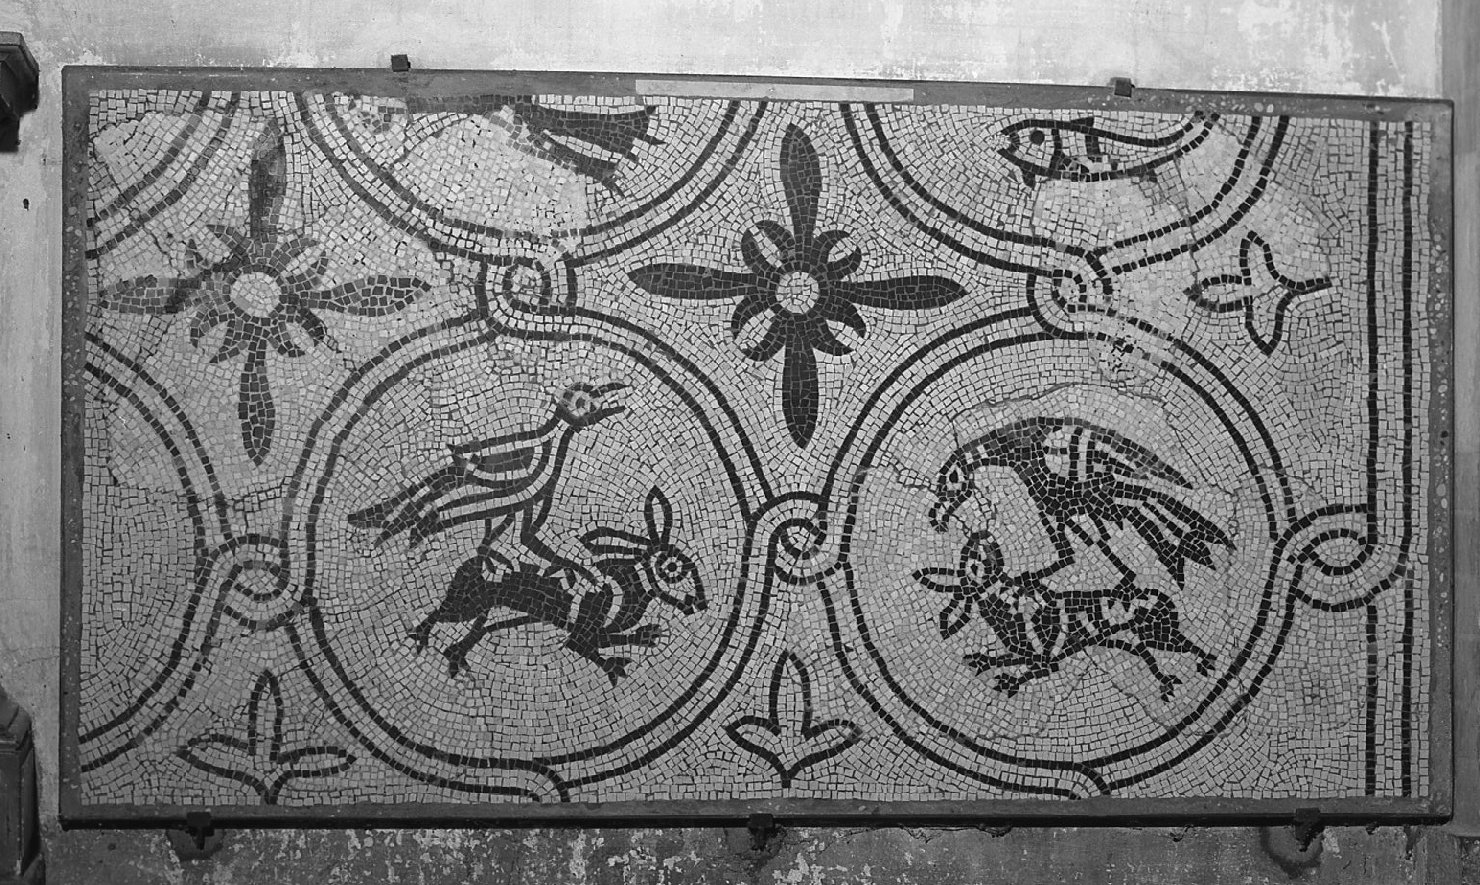 motivi decorativi a girali con animali e motivi floreali (decorazione musiva, frammento) - ambito veneto (fine/inizio secc. XI/ XII)